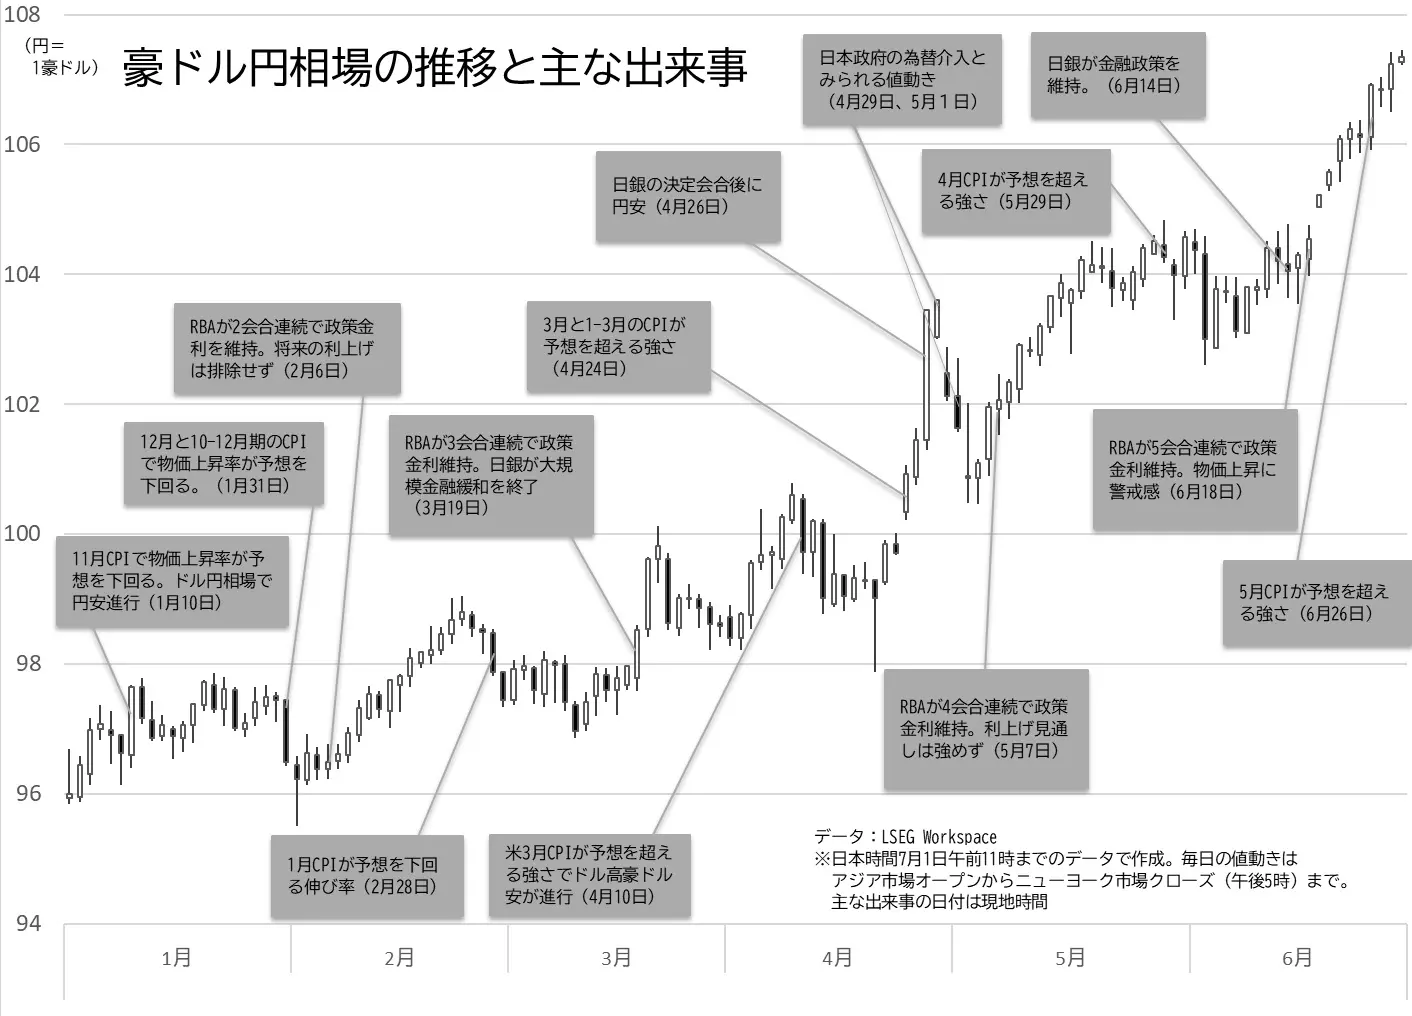 豪ドル円相場の日足チャートの推移と主な出来事のグラフ